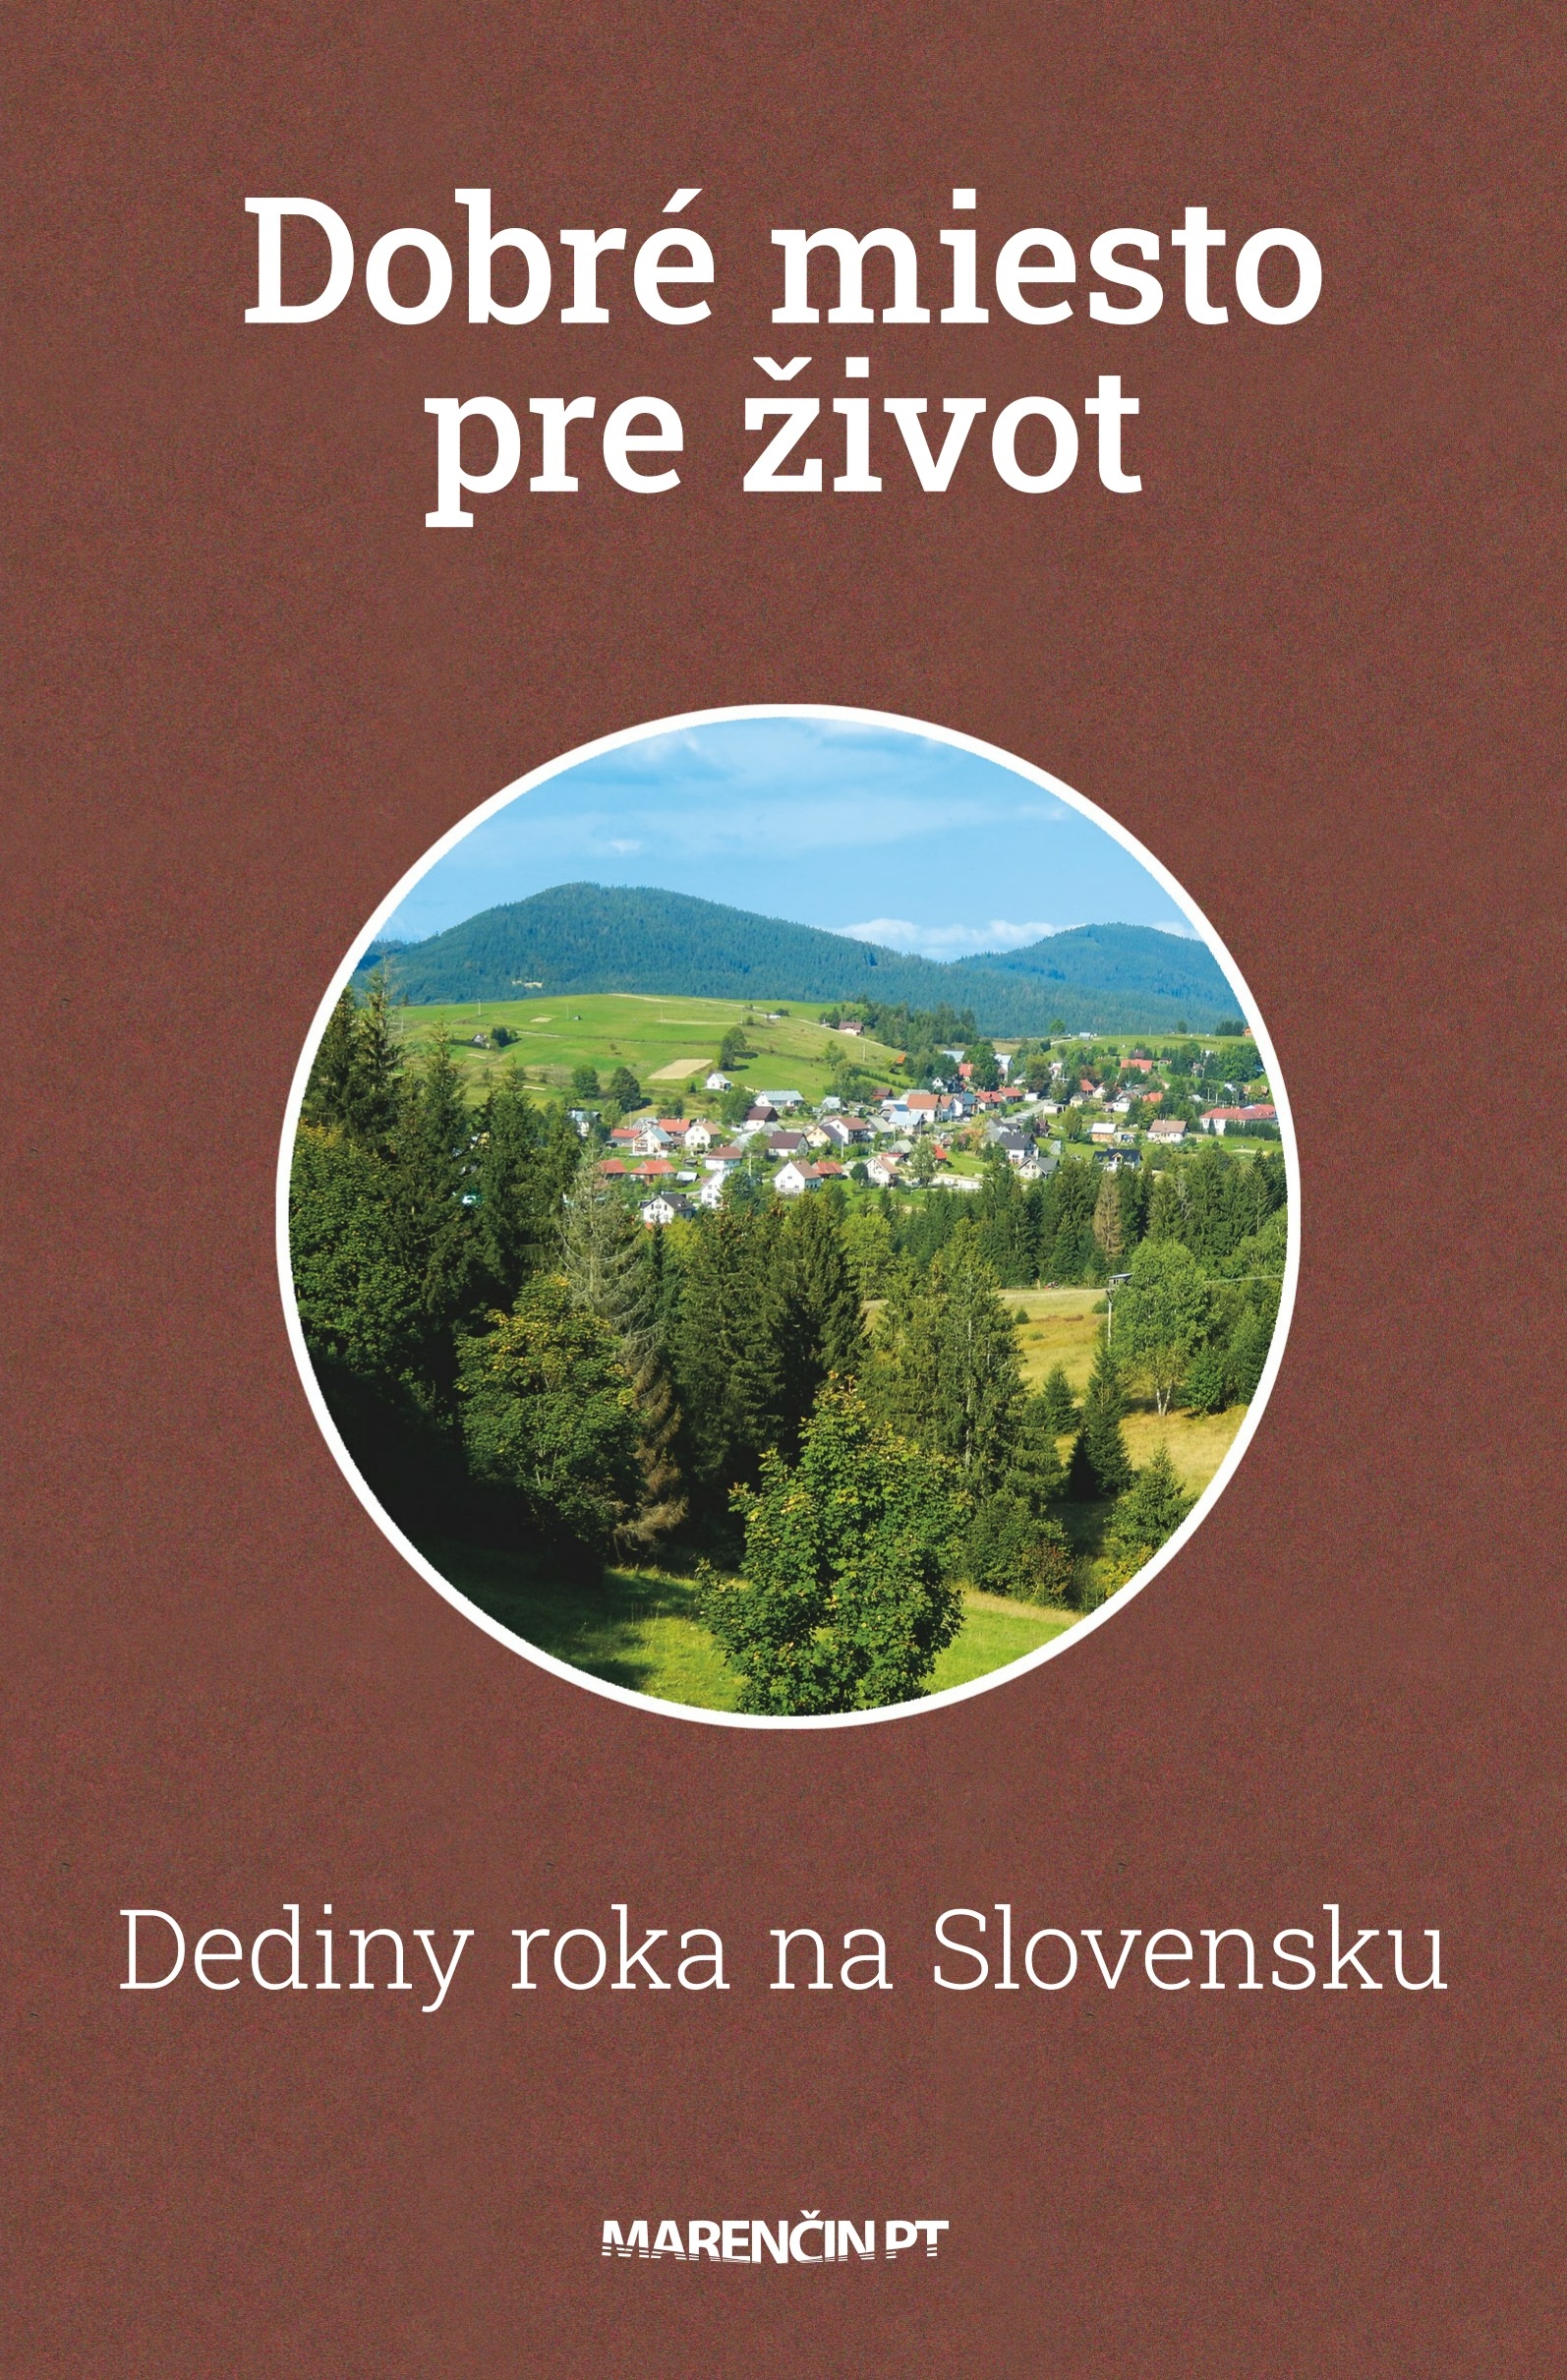 Dobré miesto pre život: dediny roka na Slovensku